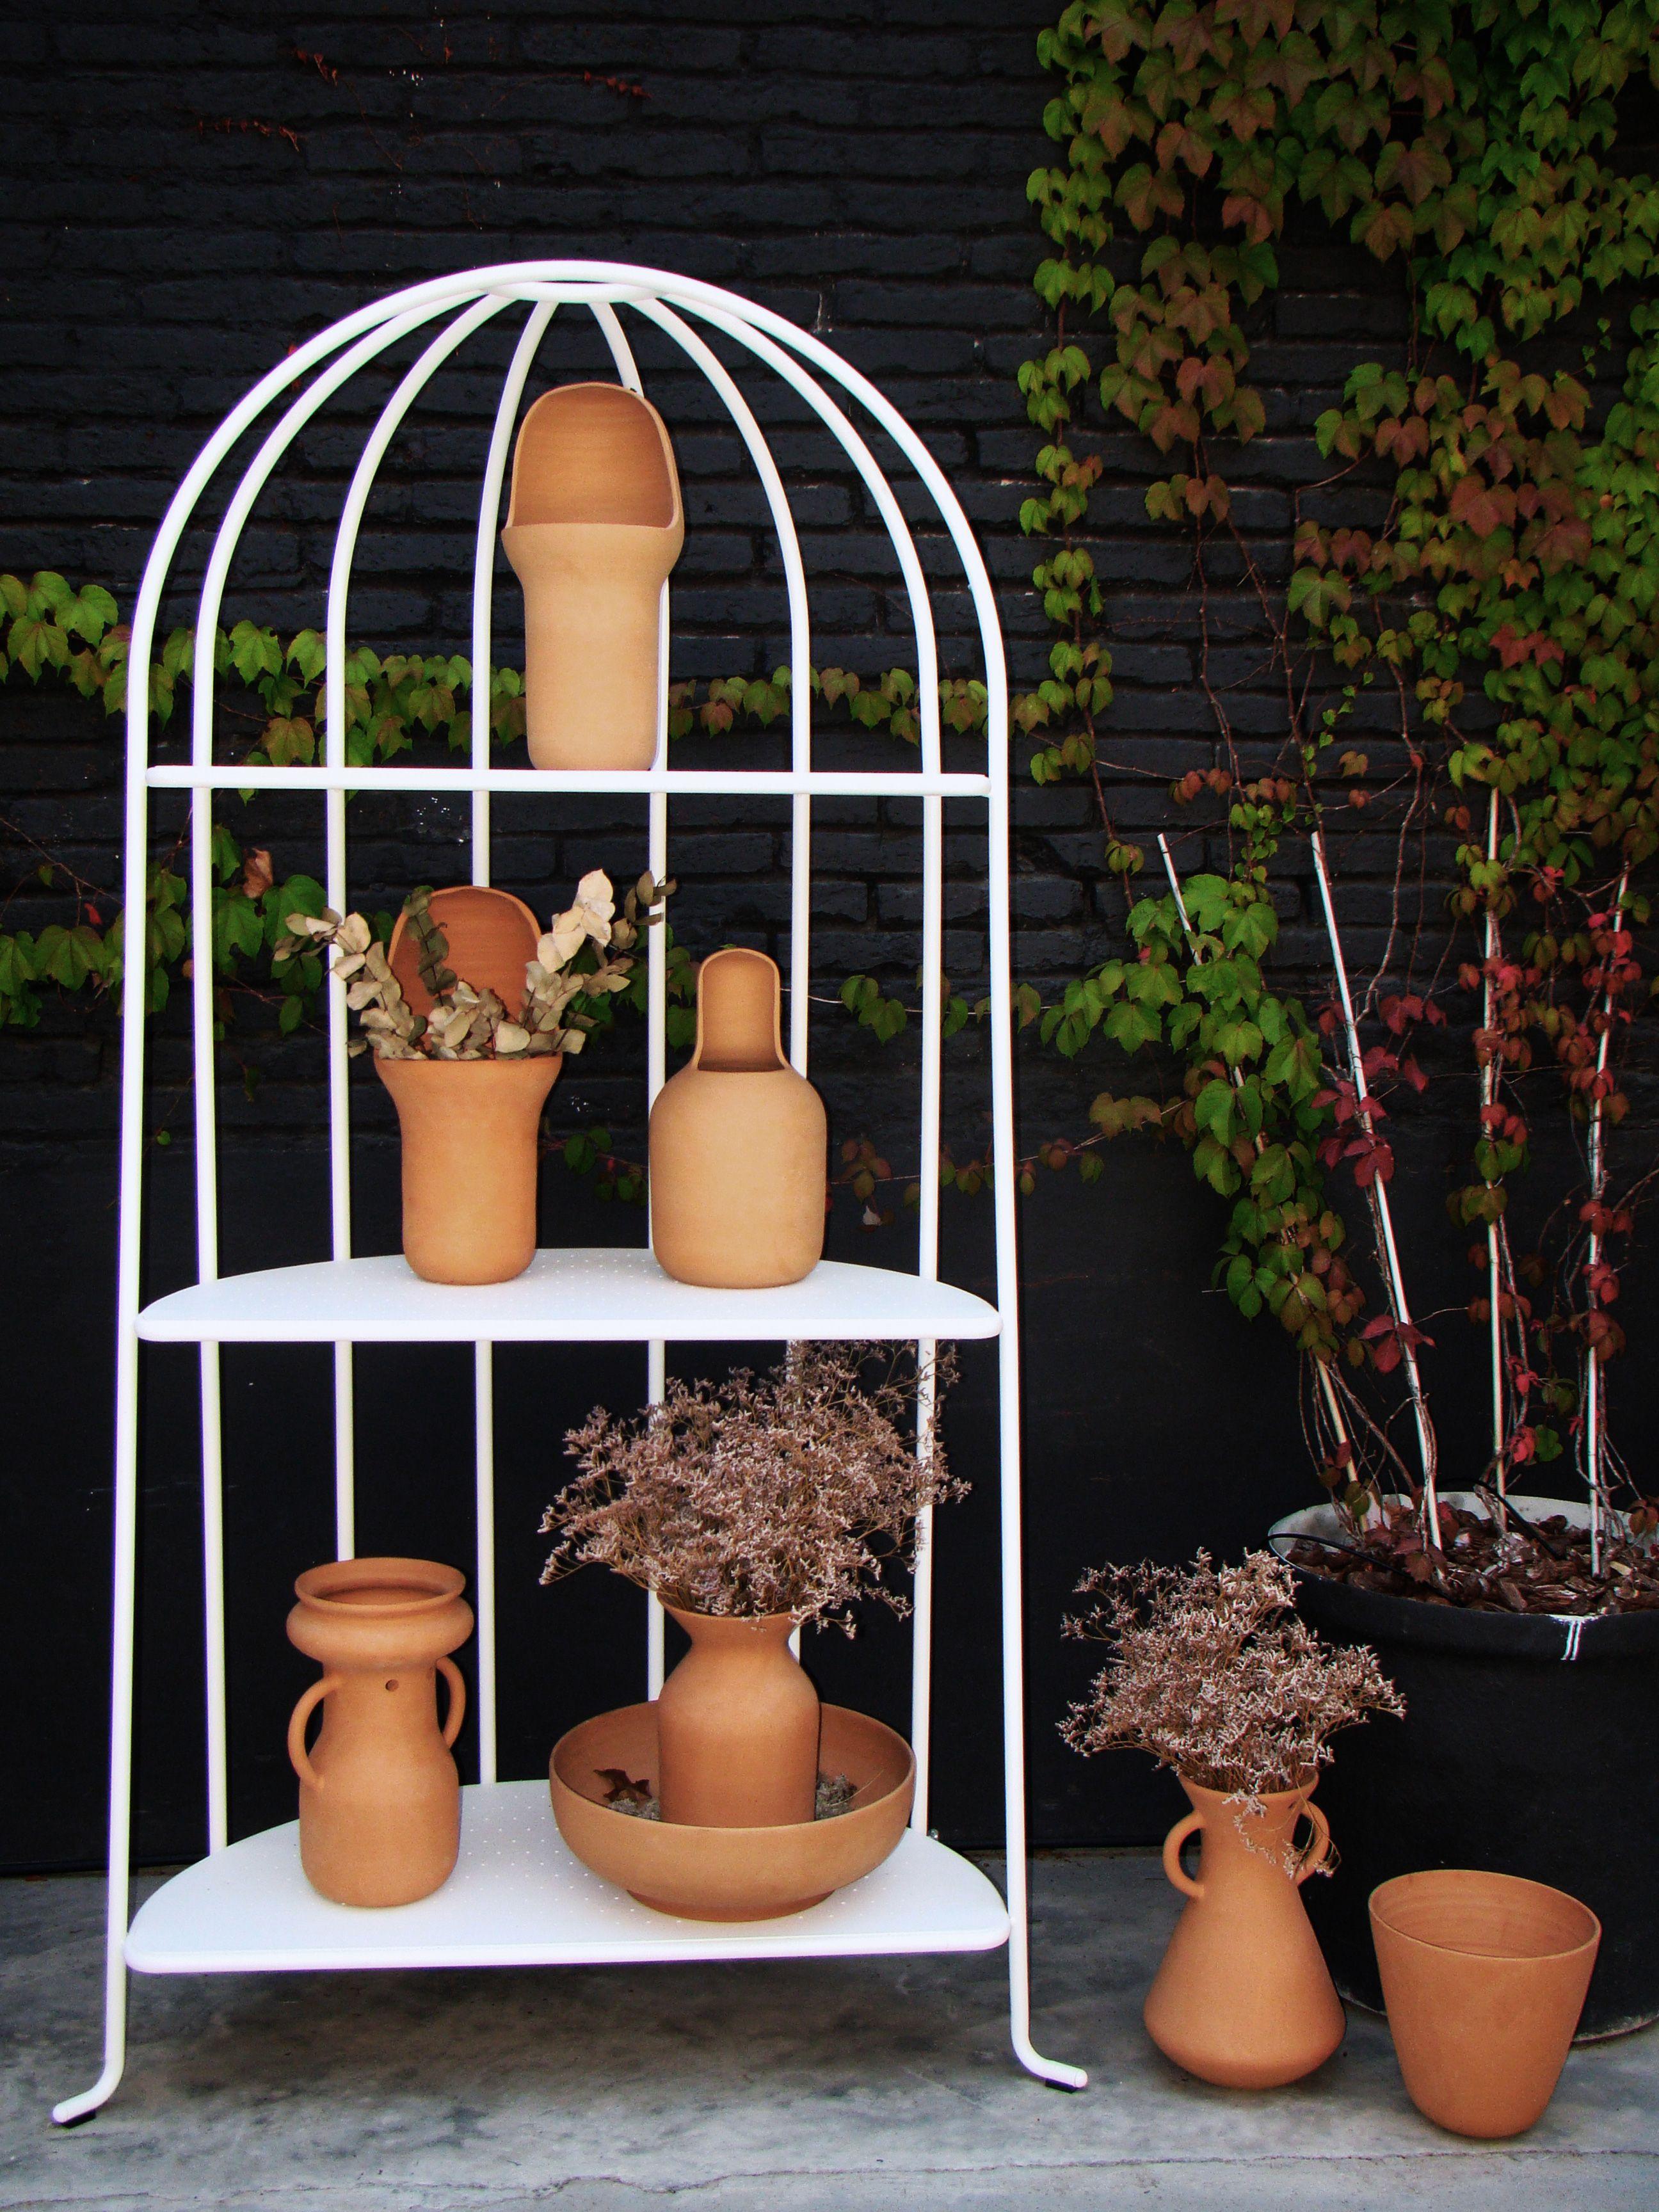 Jaime Hayon a conçu les vases Gardenia en terre cuite pour compléter sa collection de mobilier d'extérieur. 

Leur forme est unique et illustre l'incomparable marque de fabrique de Hayon en matière de design. Le matériau et les finitions sont en